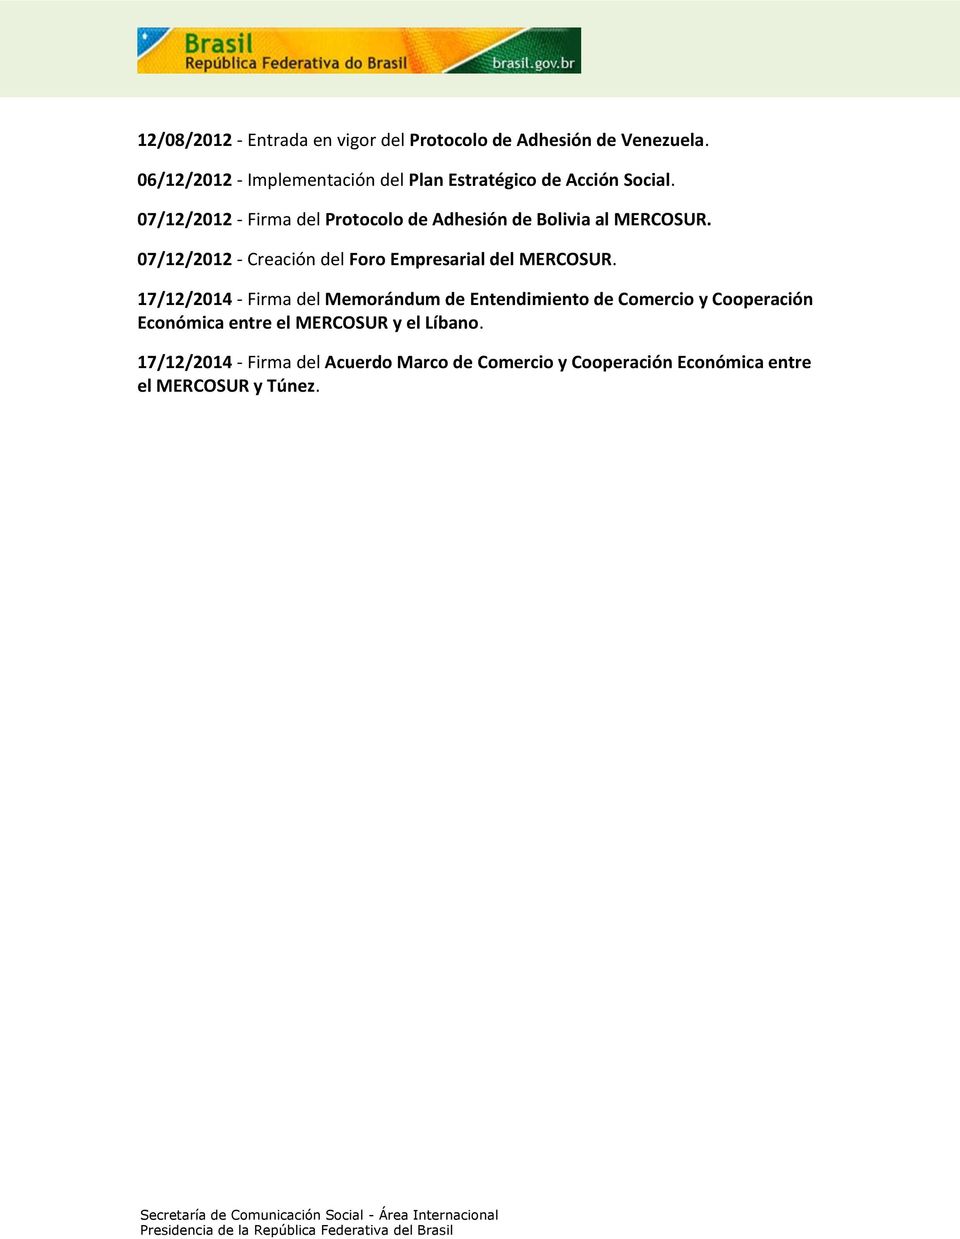 07/12/2012 - Firma del Protocolo de Adhesión de Bolivia al MERCOSUR.